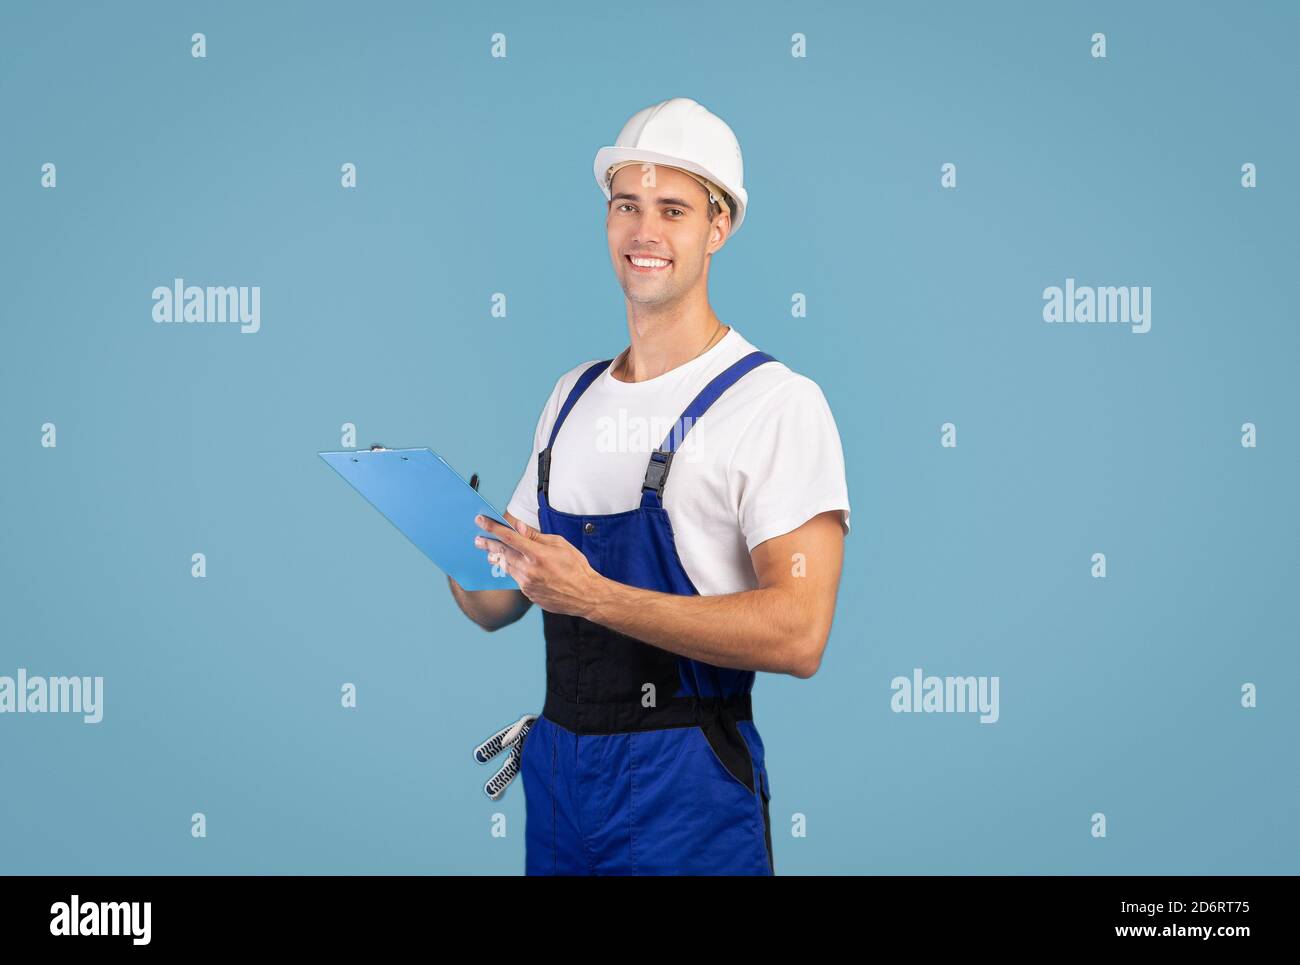 Riparazione e ristrutturazione. Un handyman sorridente in elmetto che si pone su sfondo blu Foto Stock